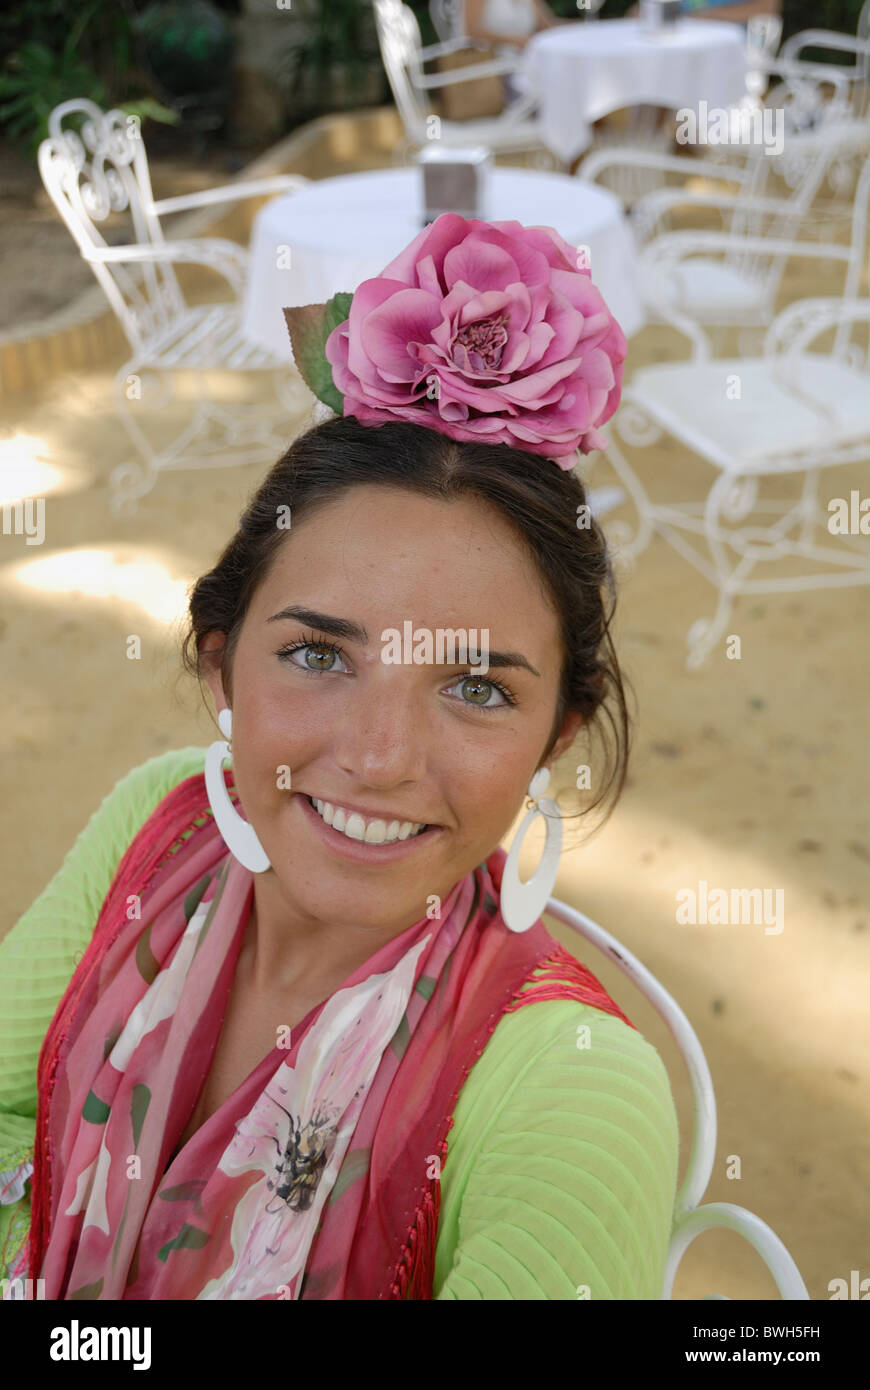 Spanisches Mädchen in Tracht Sevilla-Sevilla lächelnd Fiesta Festival Feria de Abril Andalusien Spanien Stockfoto